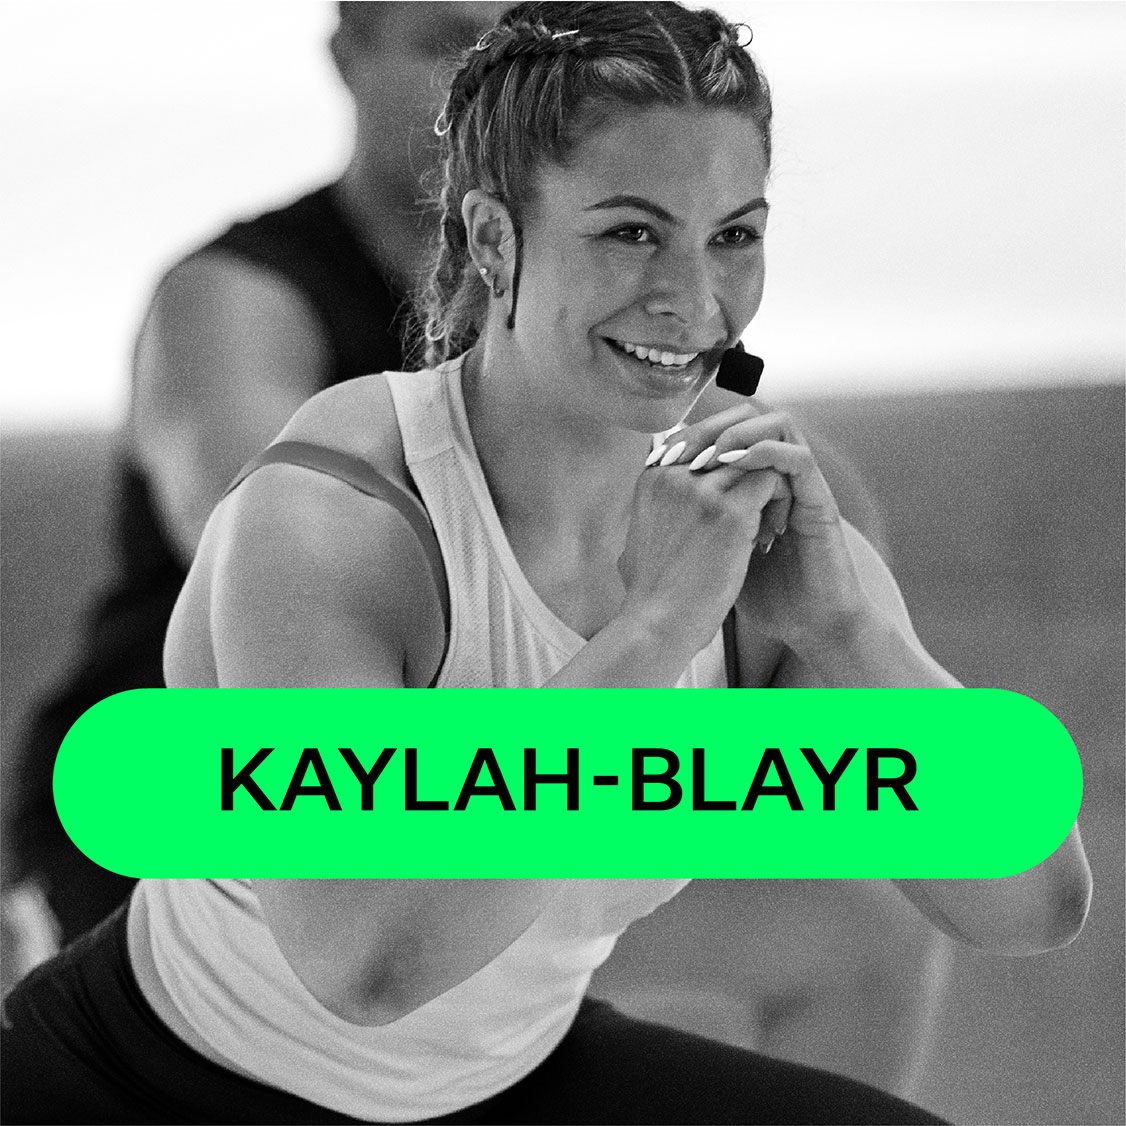 Kaylah-Blayr